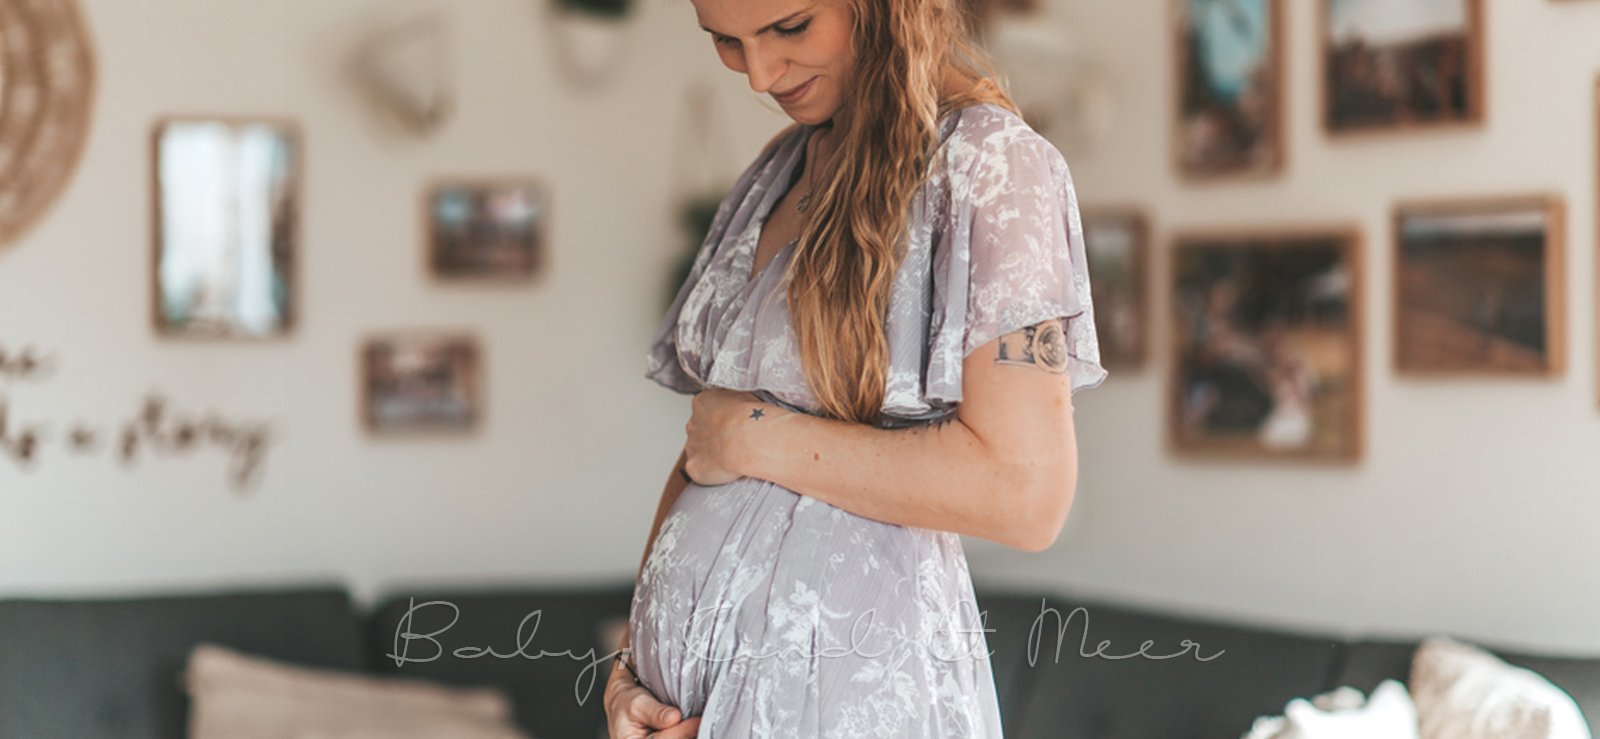 Abschied in Babypause schwanger babykindundmeer 3